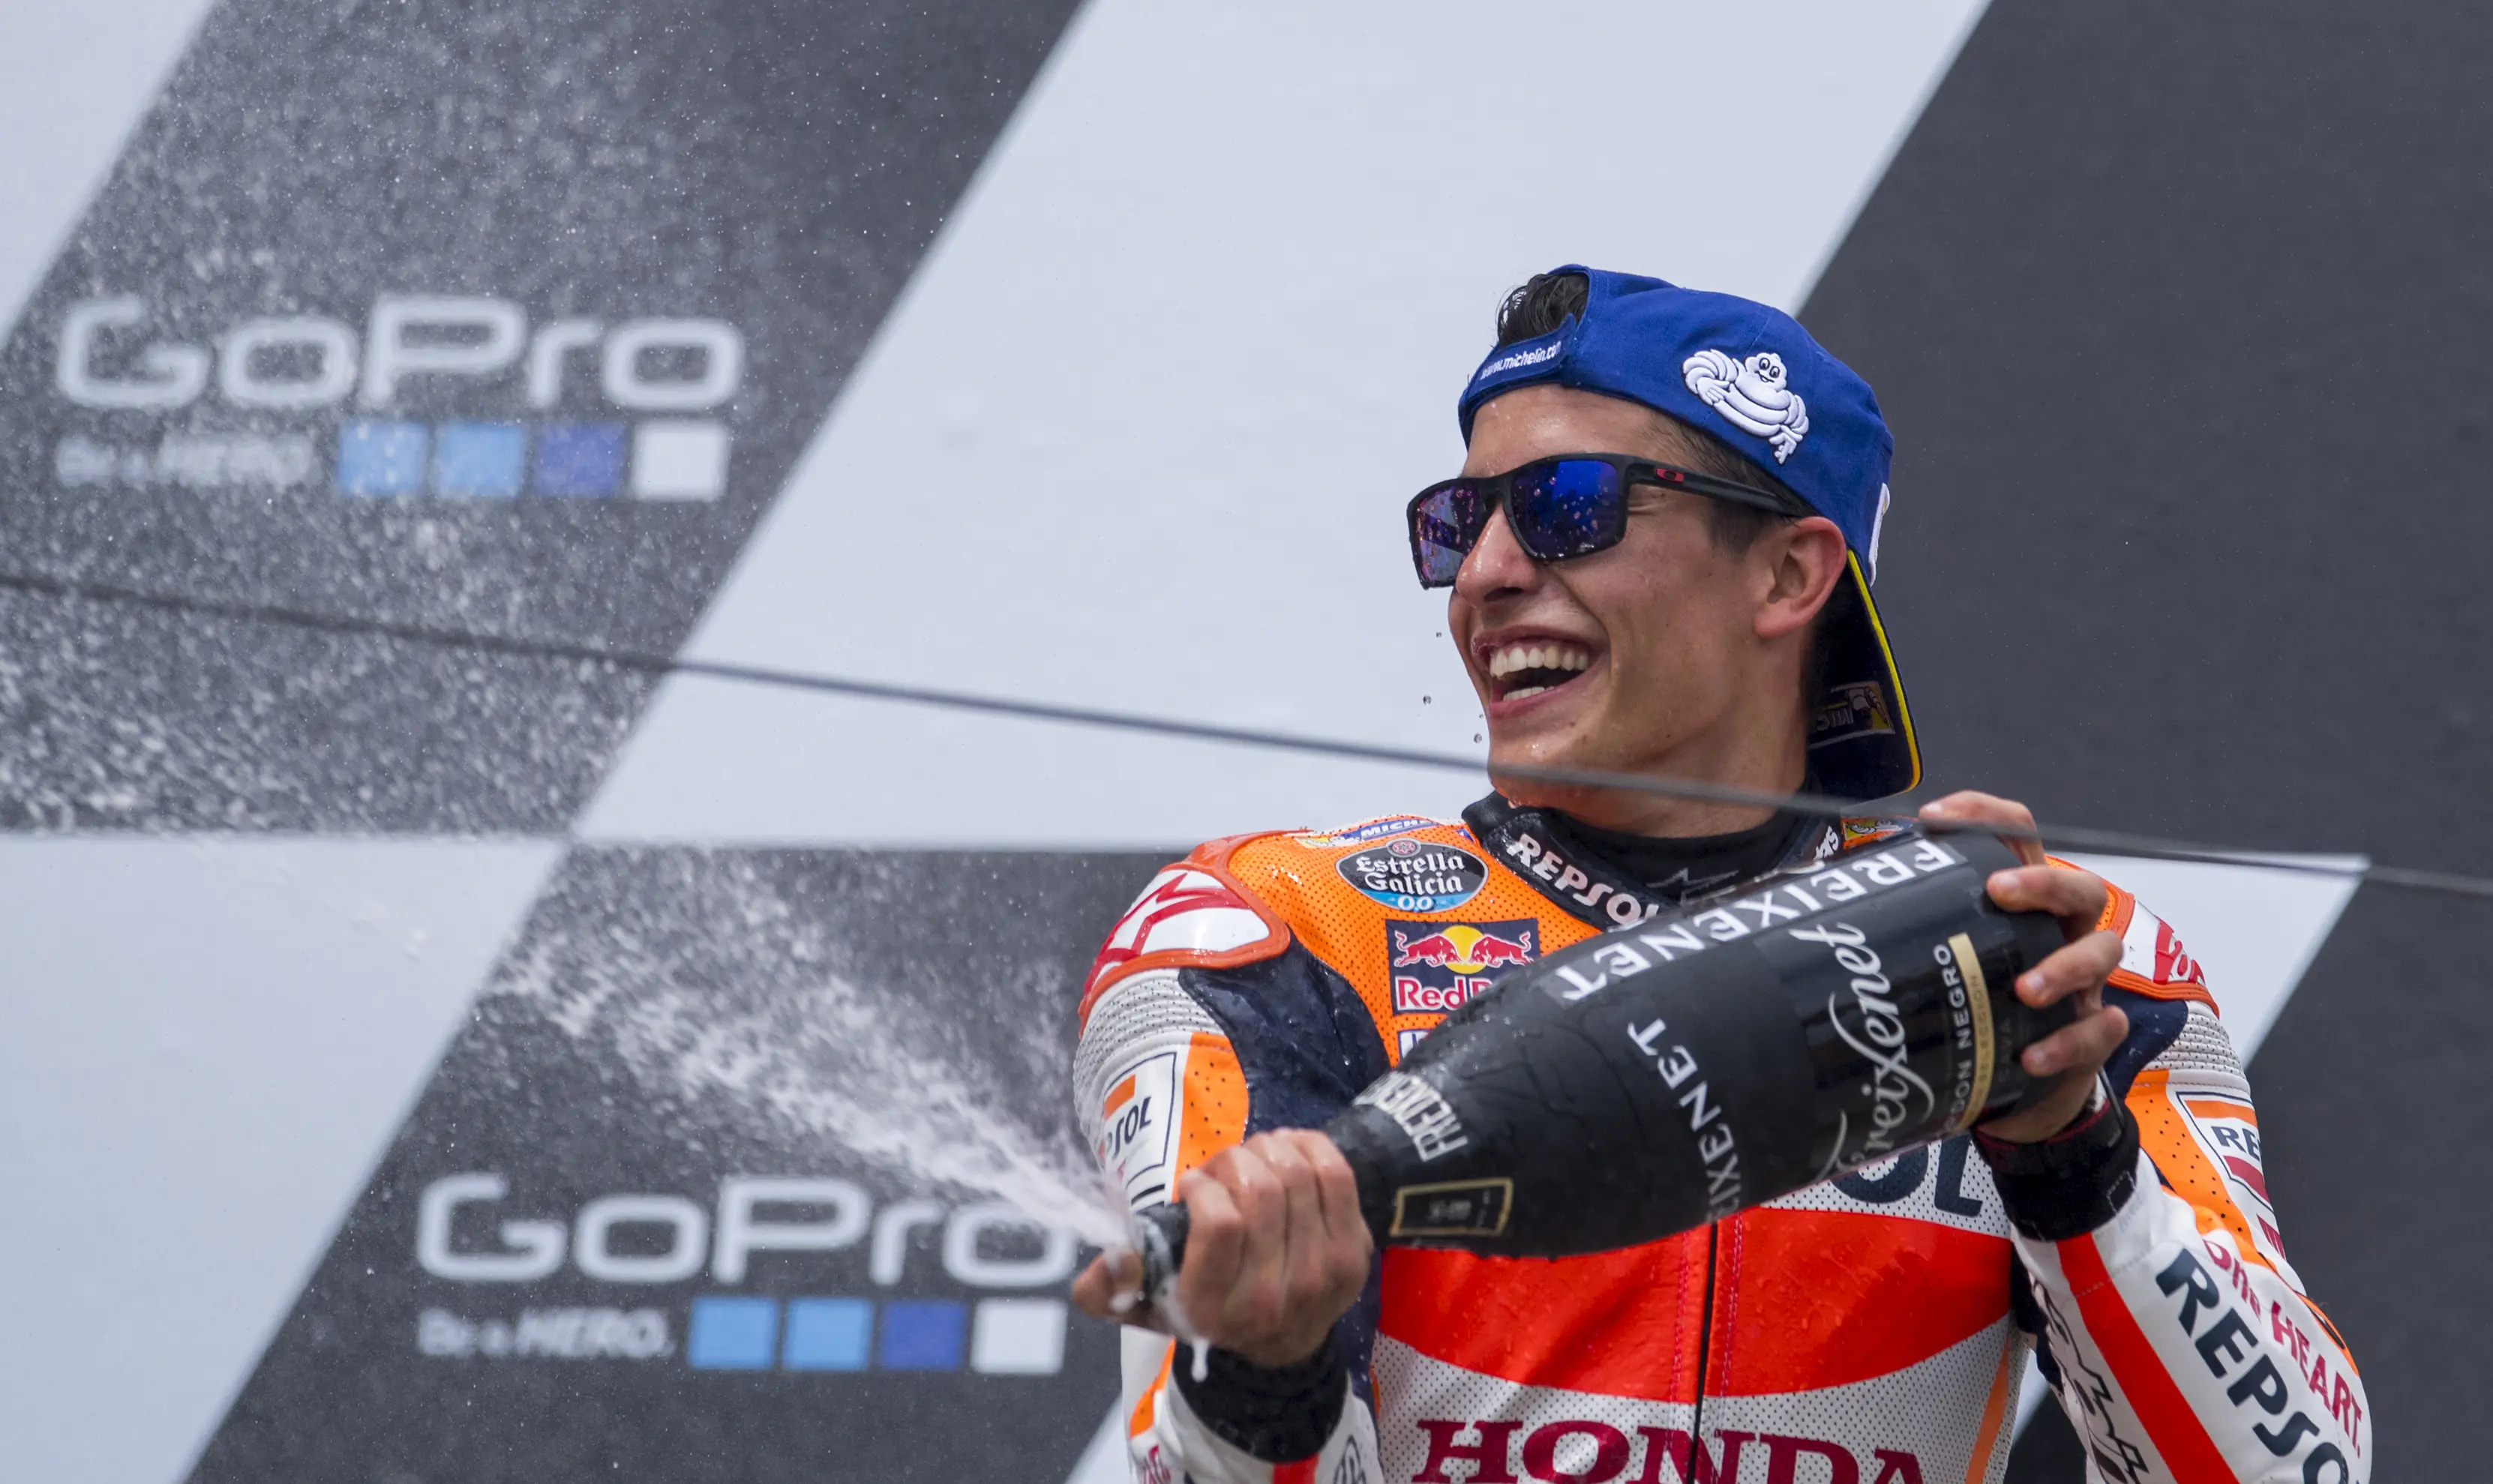 Pembalap Repsol Honda, Marc Marquez saat merebut podium juara MotoGP Jerman 2016. (AFP)